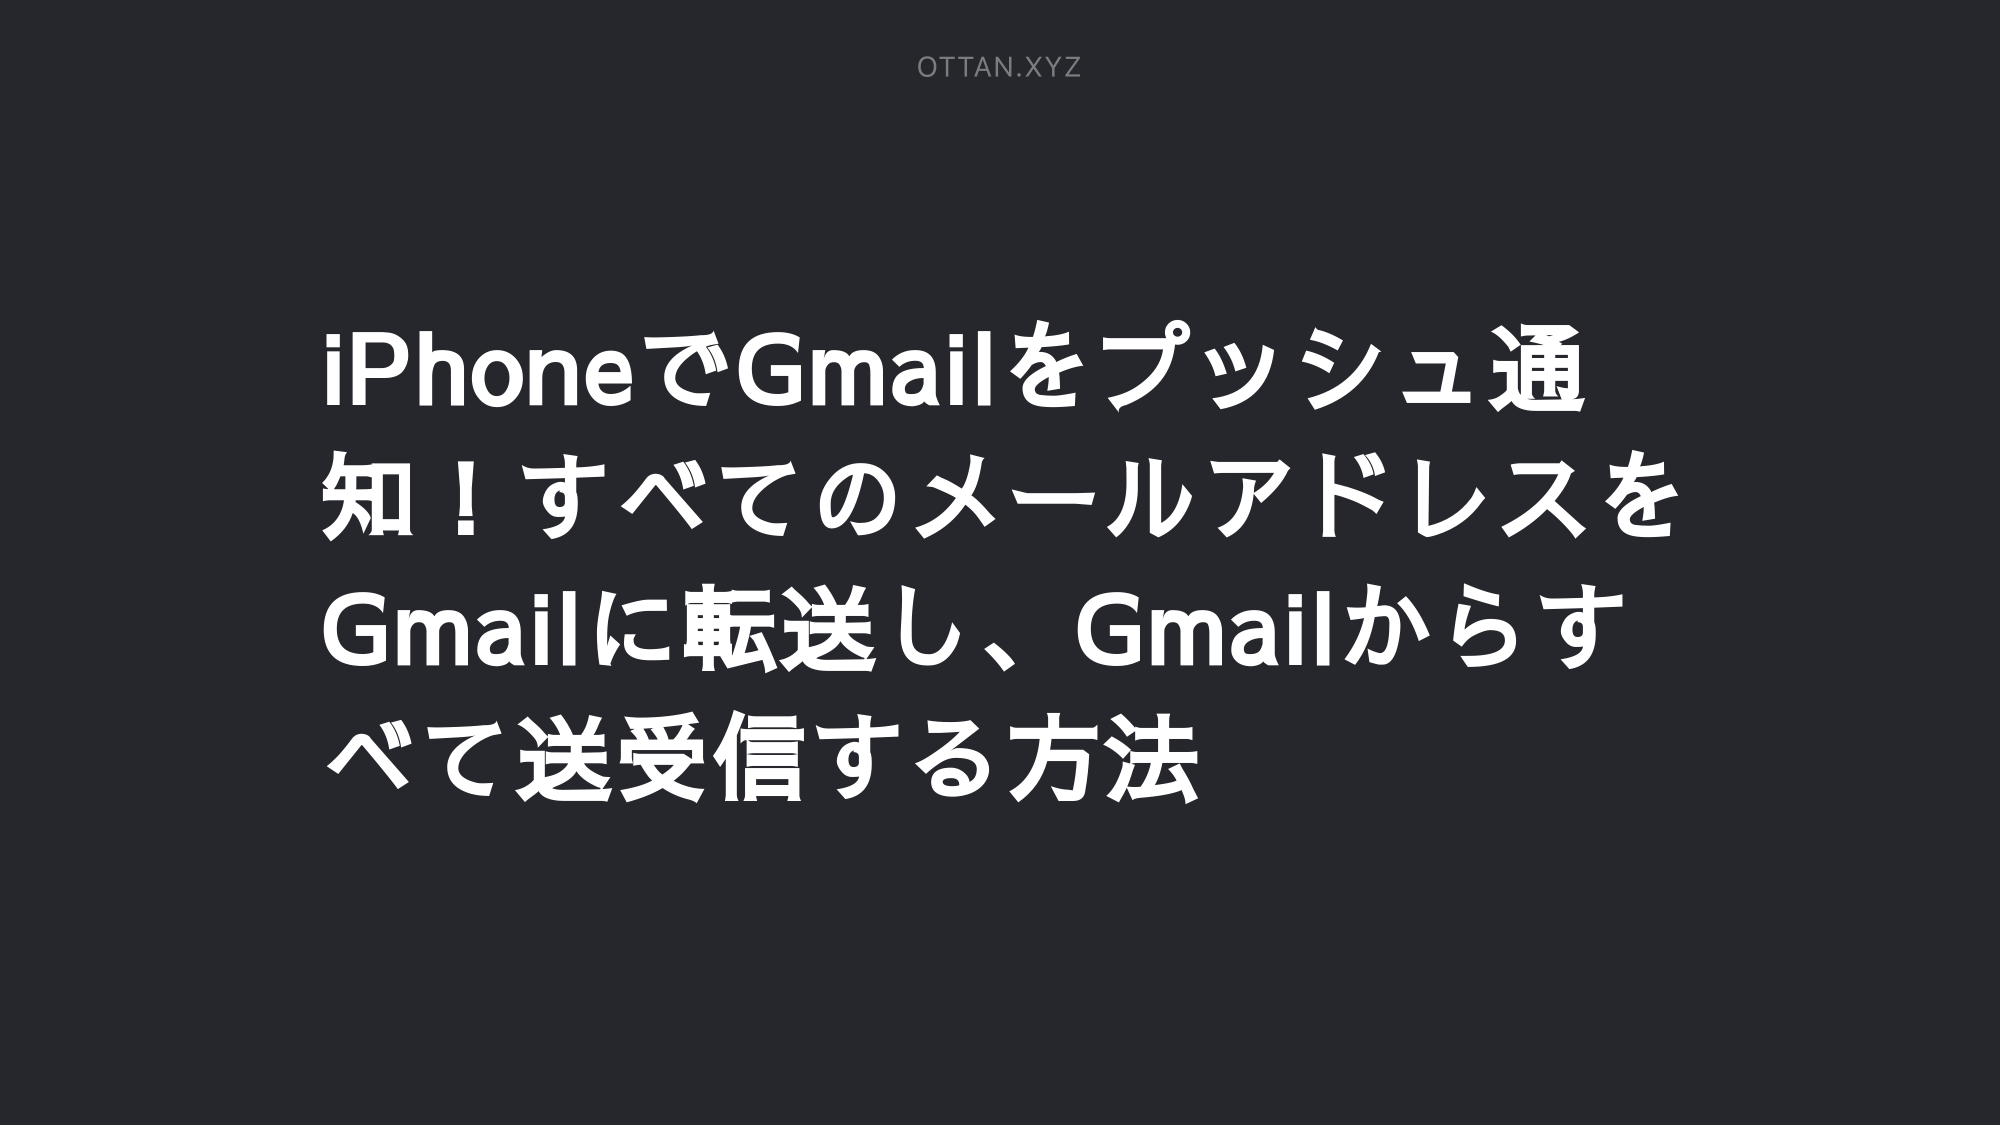 Iphoneでgmailをプッシュ通知 すべてのメールアドレスをgmailに転送し Gmailからすべて送受信する方法 Ottanxyz